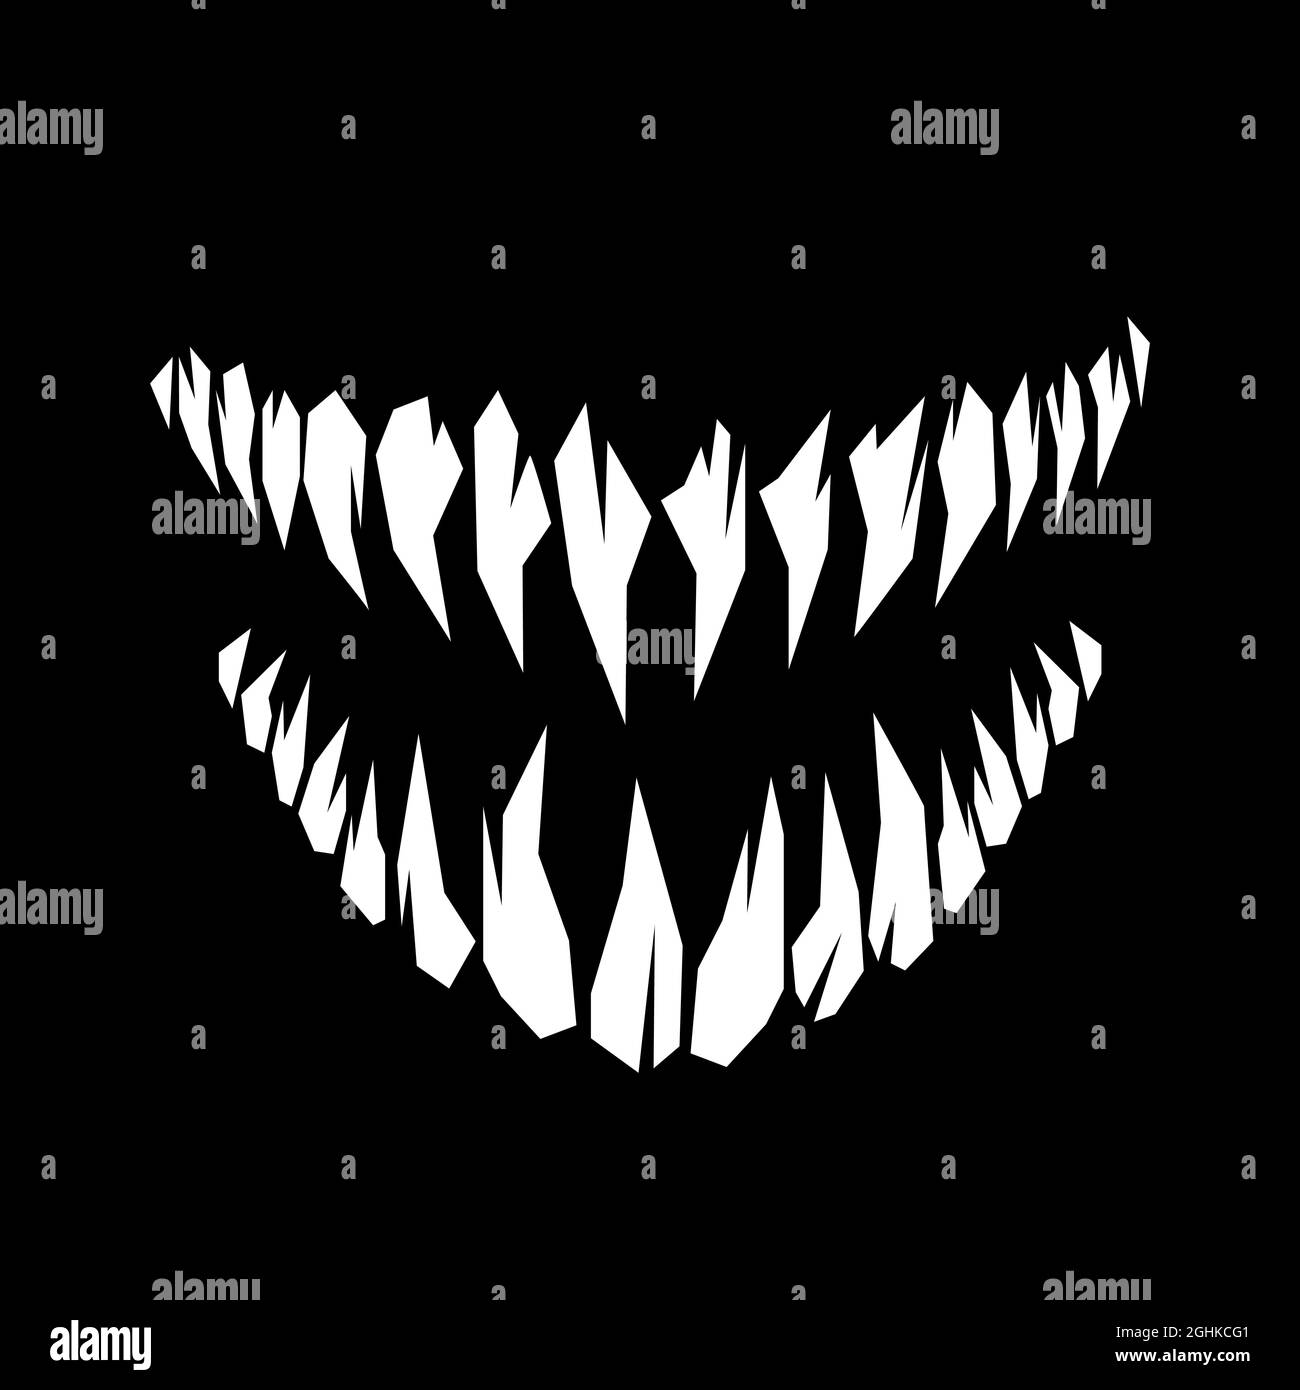 Horror mostro e vampiro fangs denti silhouette illustrazione vettoriale isolato su sfondo nero Illustrazione Vettoriale